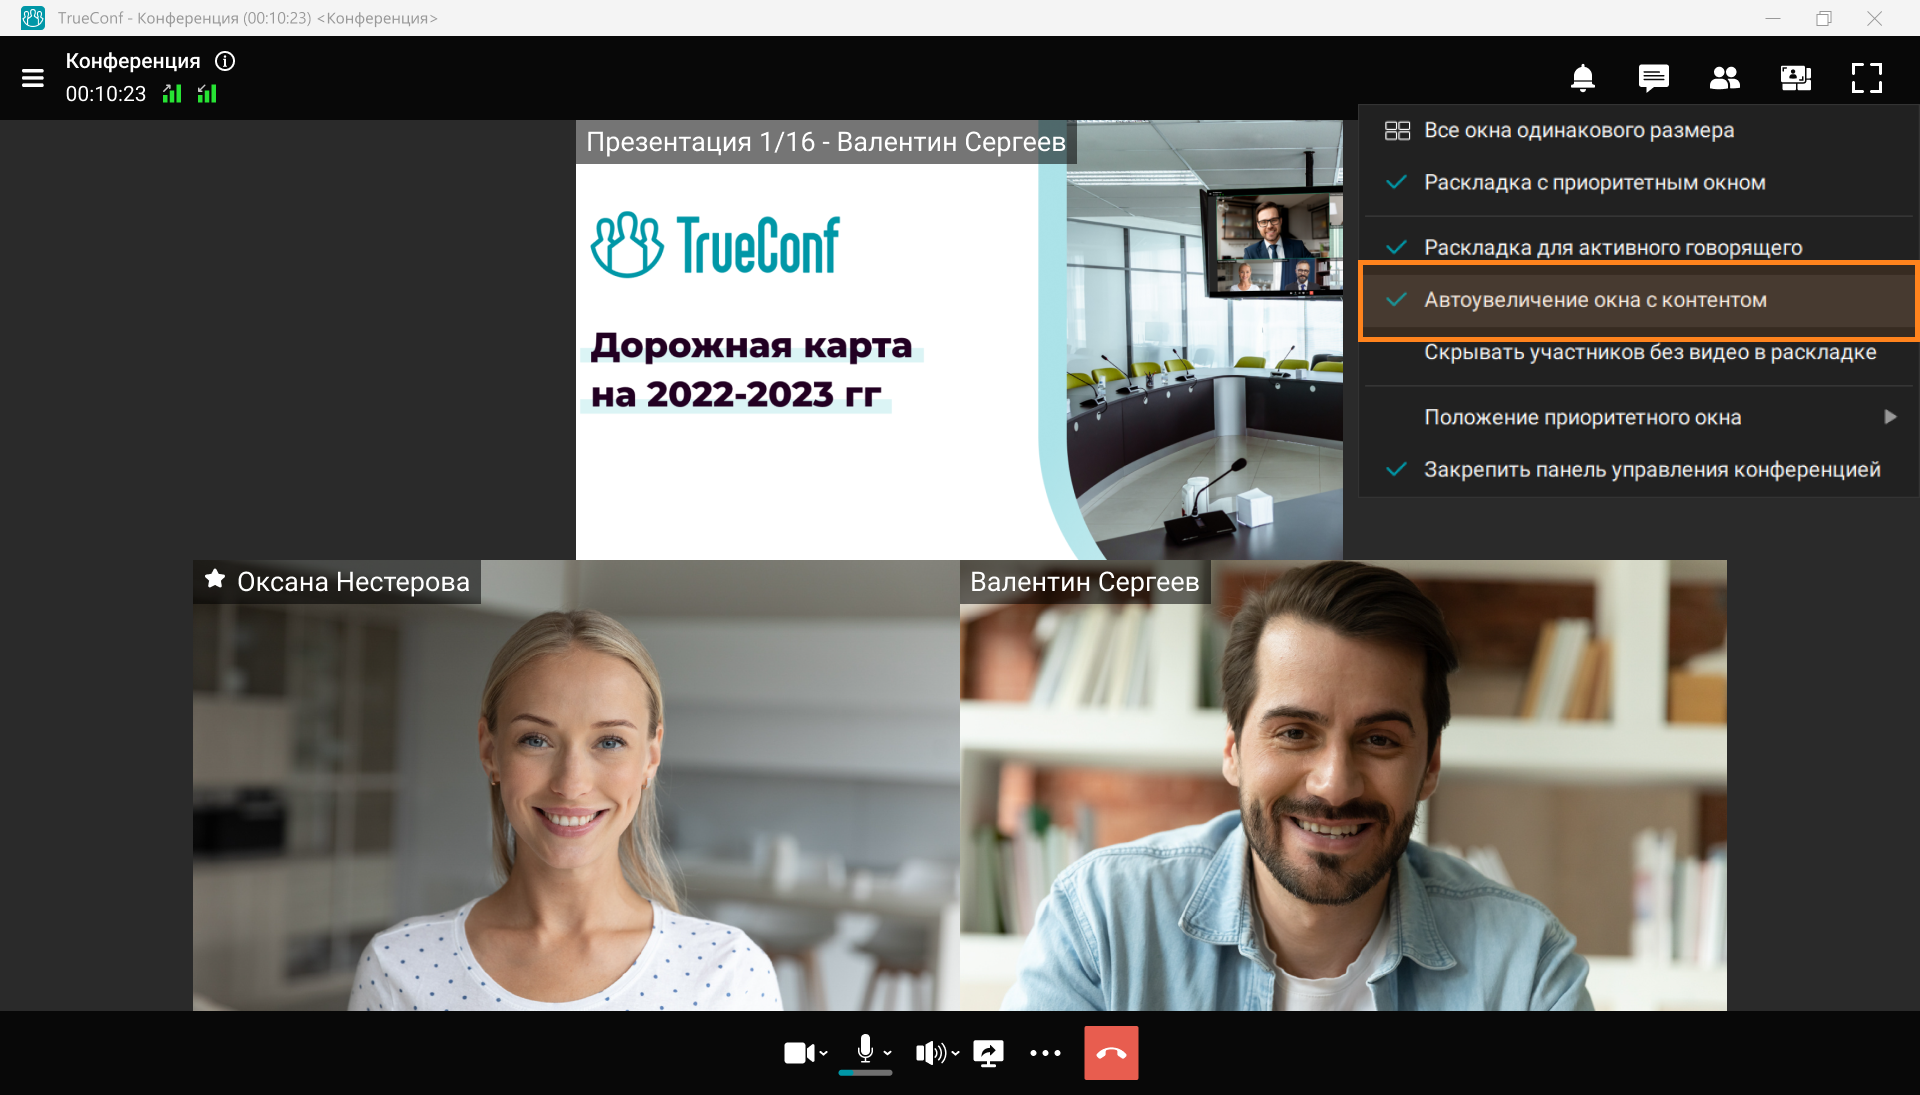 Обновление TrueConf 8.1 для Windows: Улучшения мессенджера, проигрыватель записей и автоувеличение окна с контентом 5